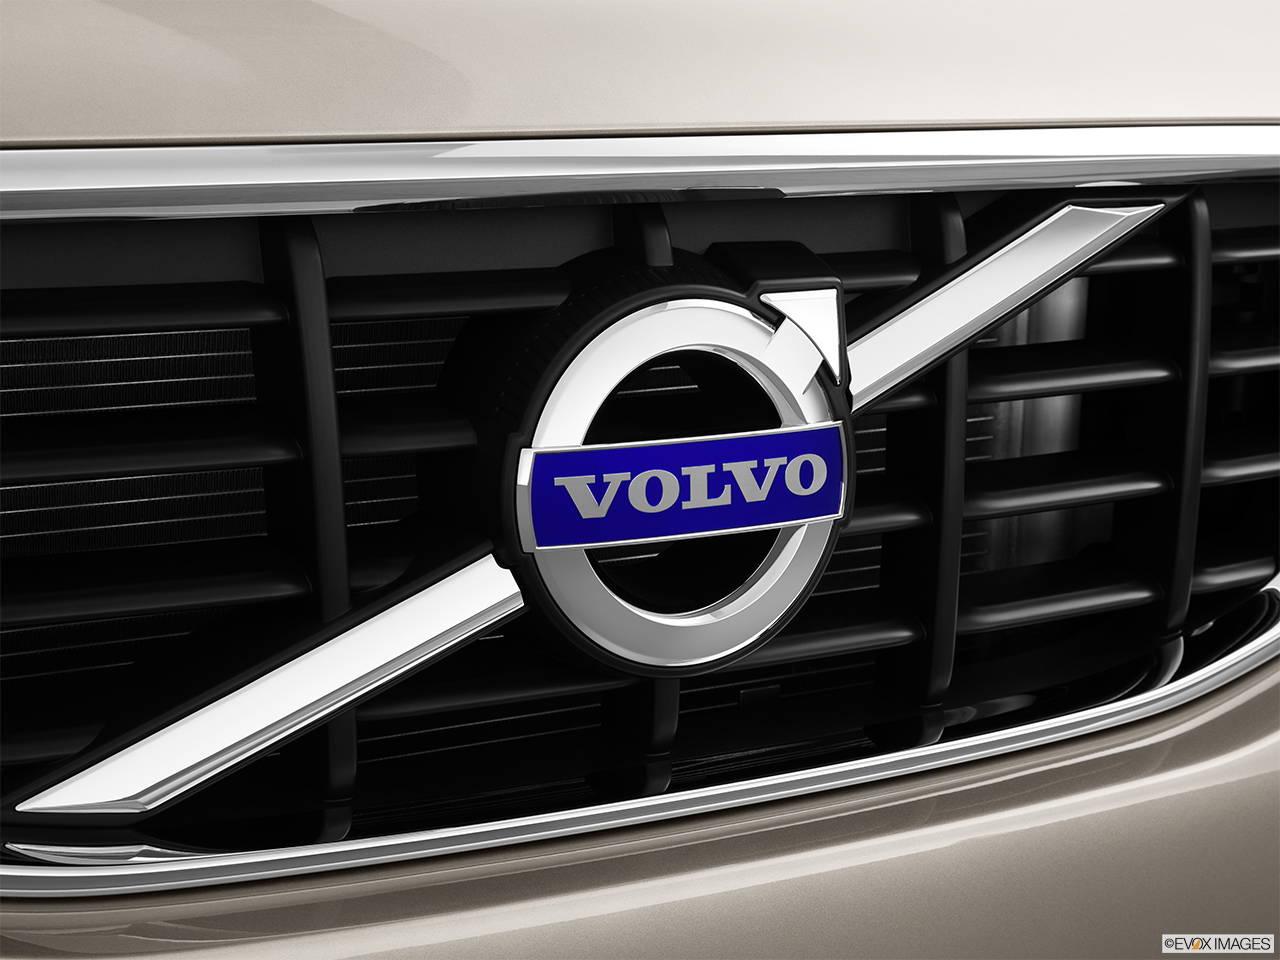 2013 Volvo XC60 3.2 FWD Premier Plus Rear manufacture badge/emblem 